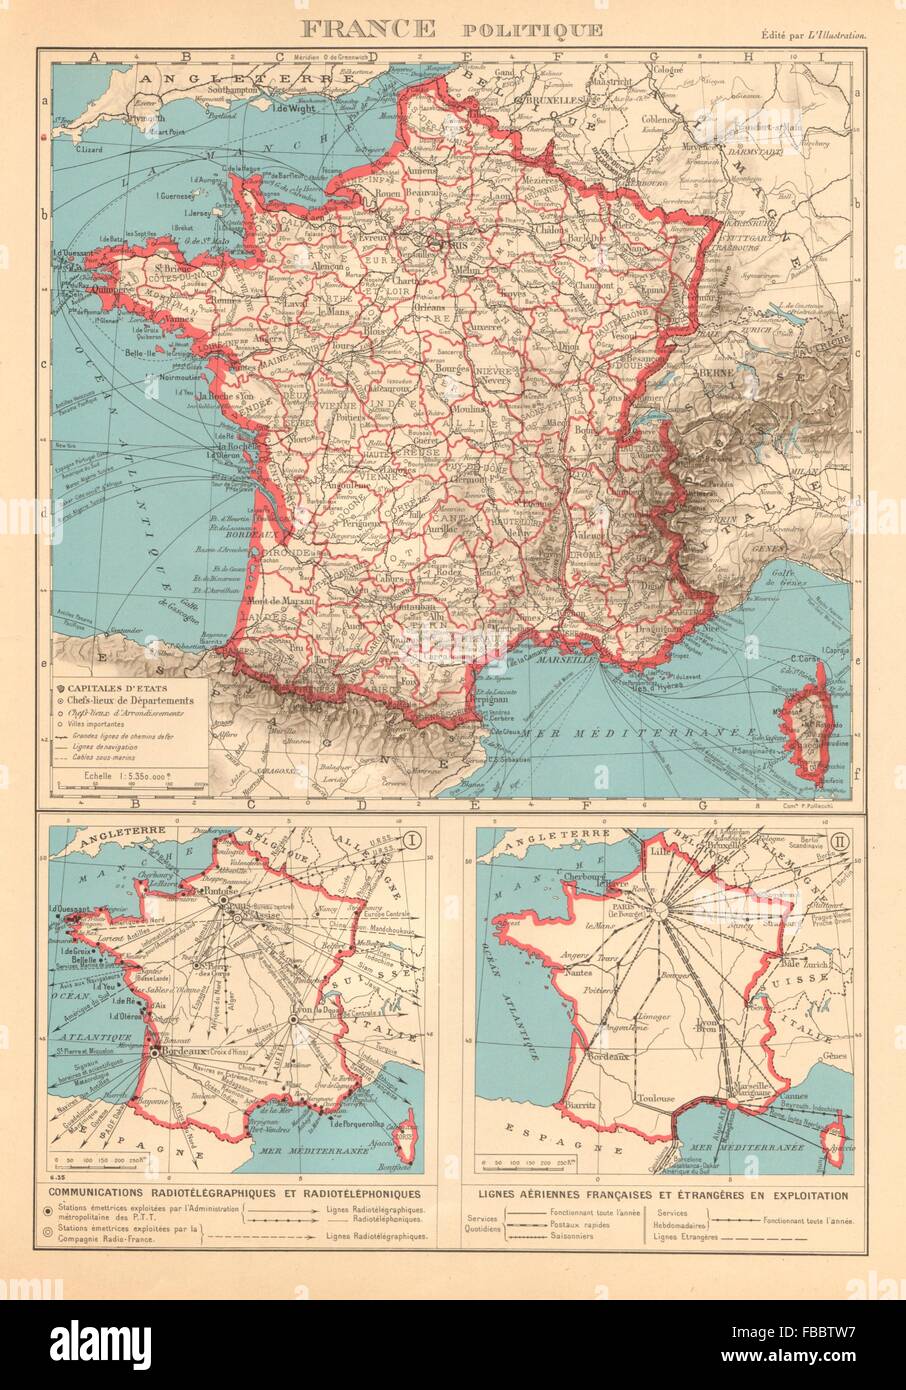 FRANCE Communications radiotéléphoniques. Lignes aériennes. Air routes, 1938 map Stock Photo